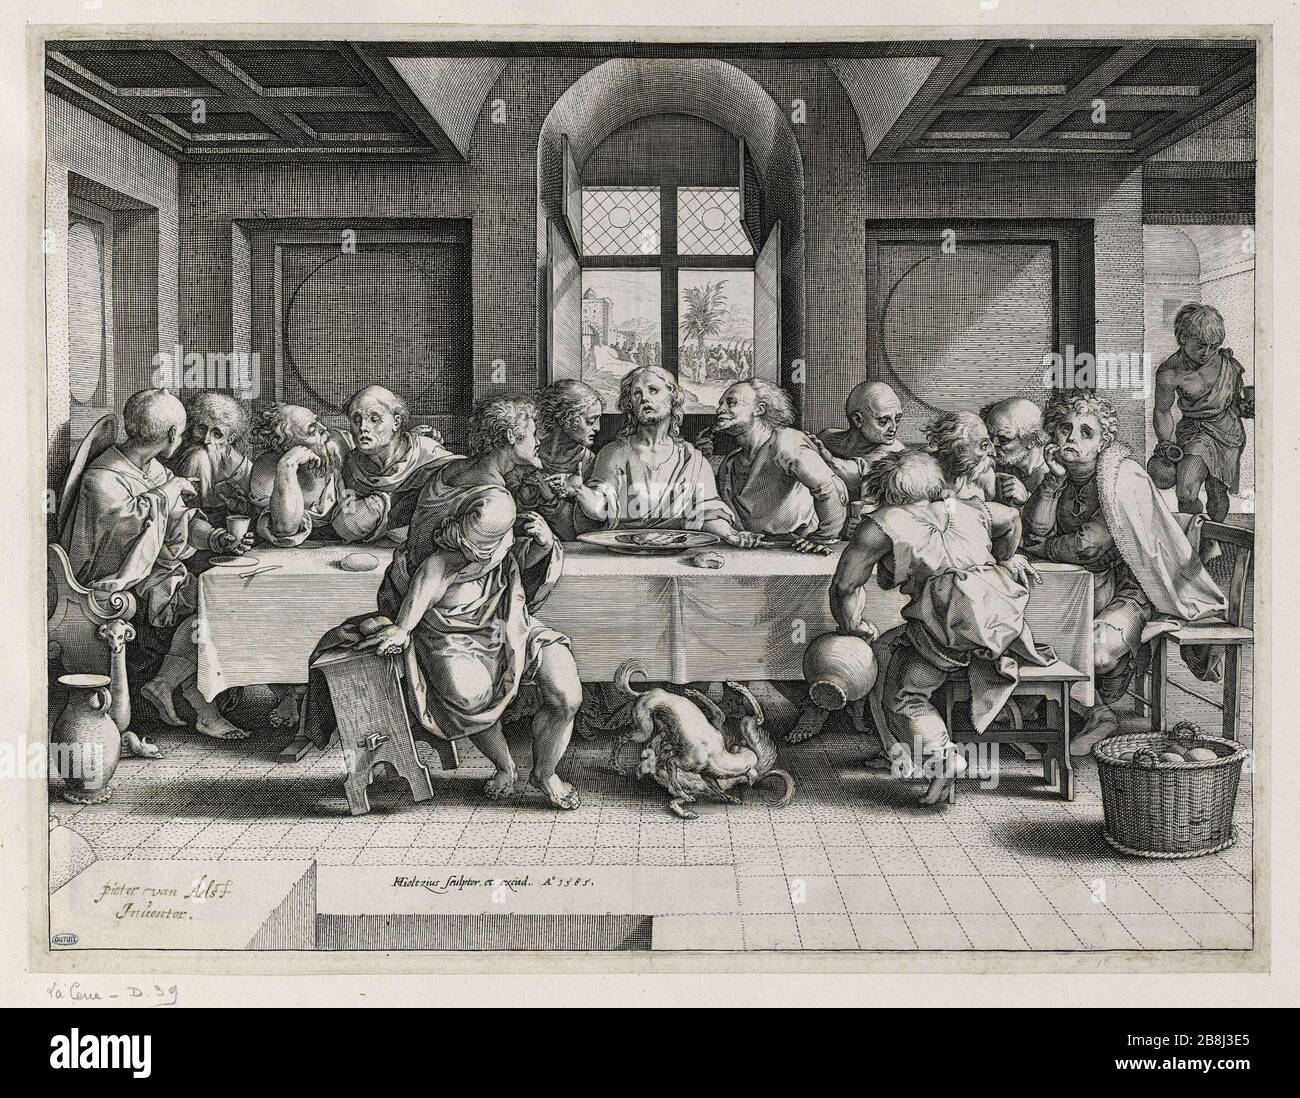 LA CENA Henri Goltzius d'après un tableau de Pieter Coecke van Aelst. 'La cène'. Gravure, 1585. Musée des Beaux-Arts de la Ville de Paris, Petit Palais. Foto Stock